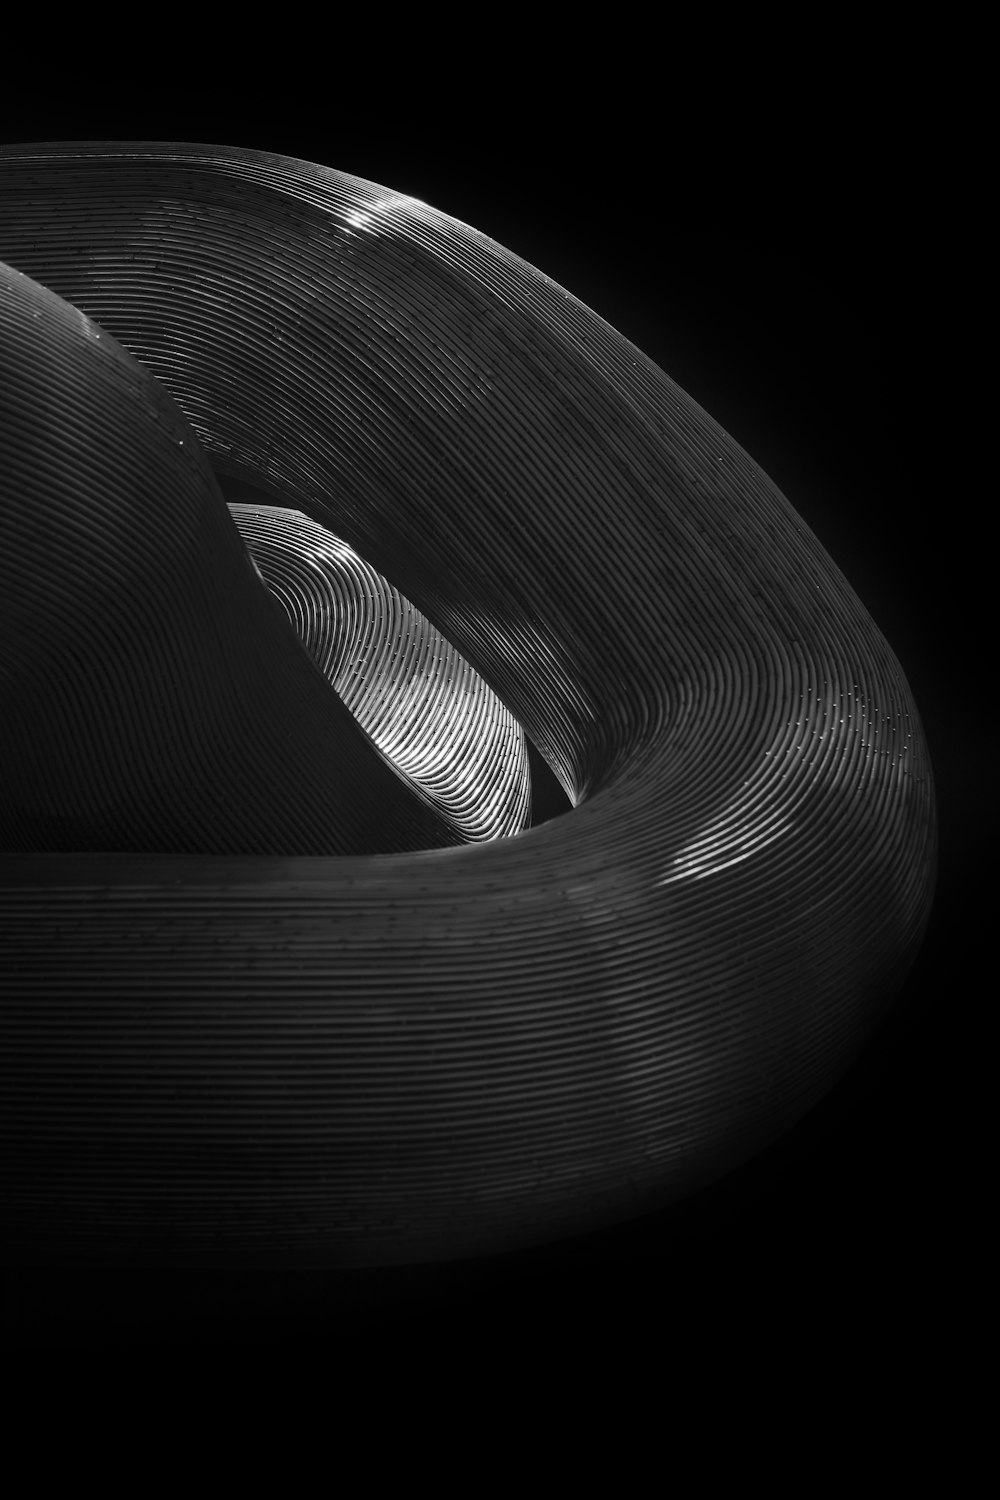 Una foto in bianco e nero di un oggetto circolare